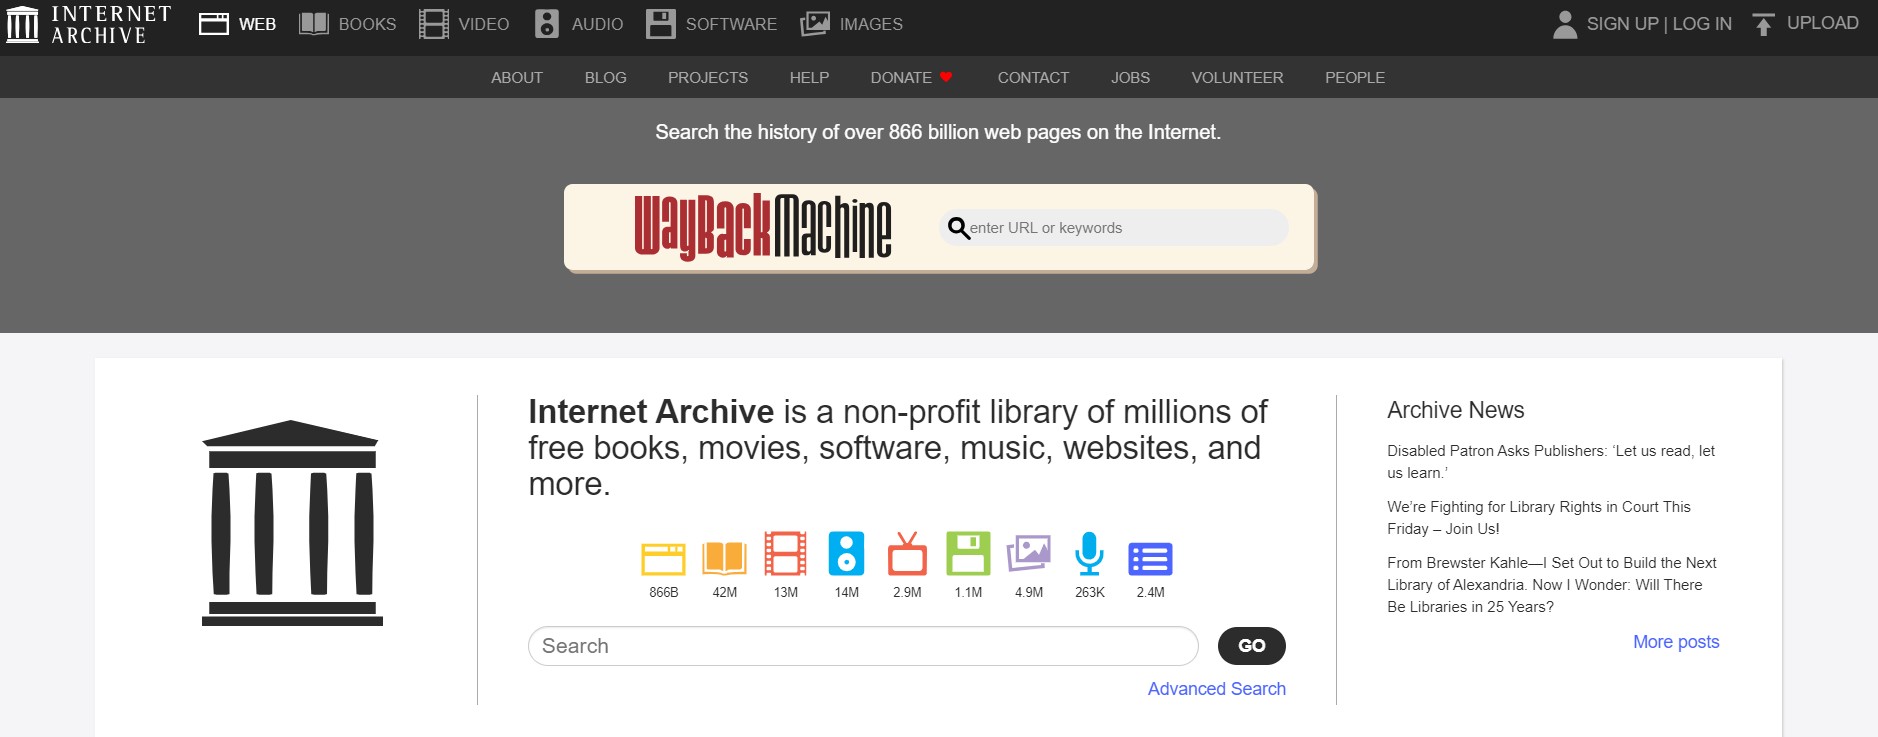 La homepage di Internet Archive